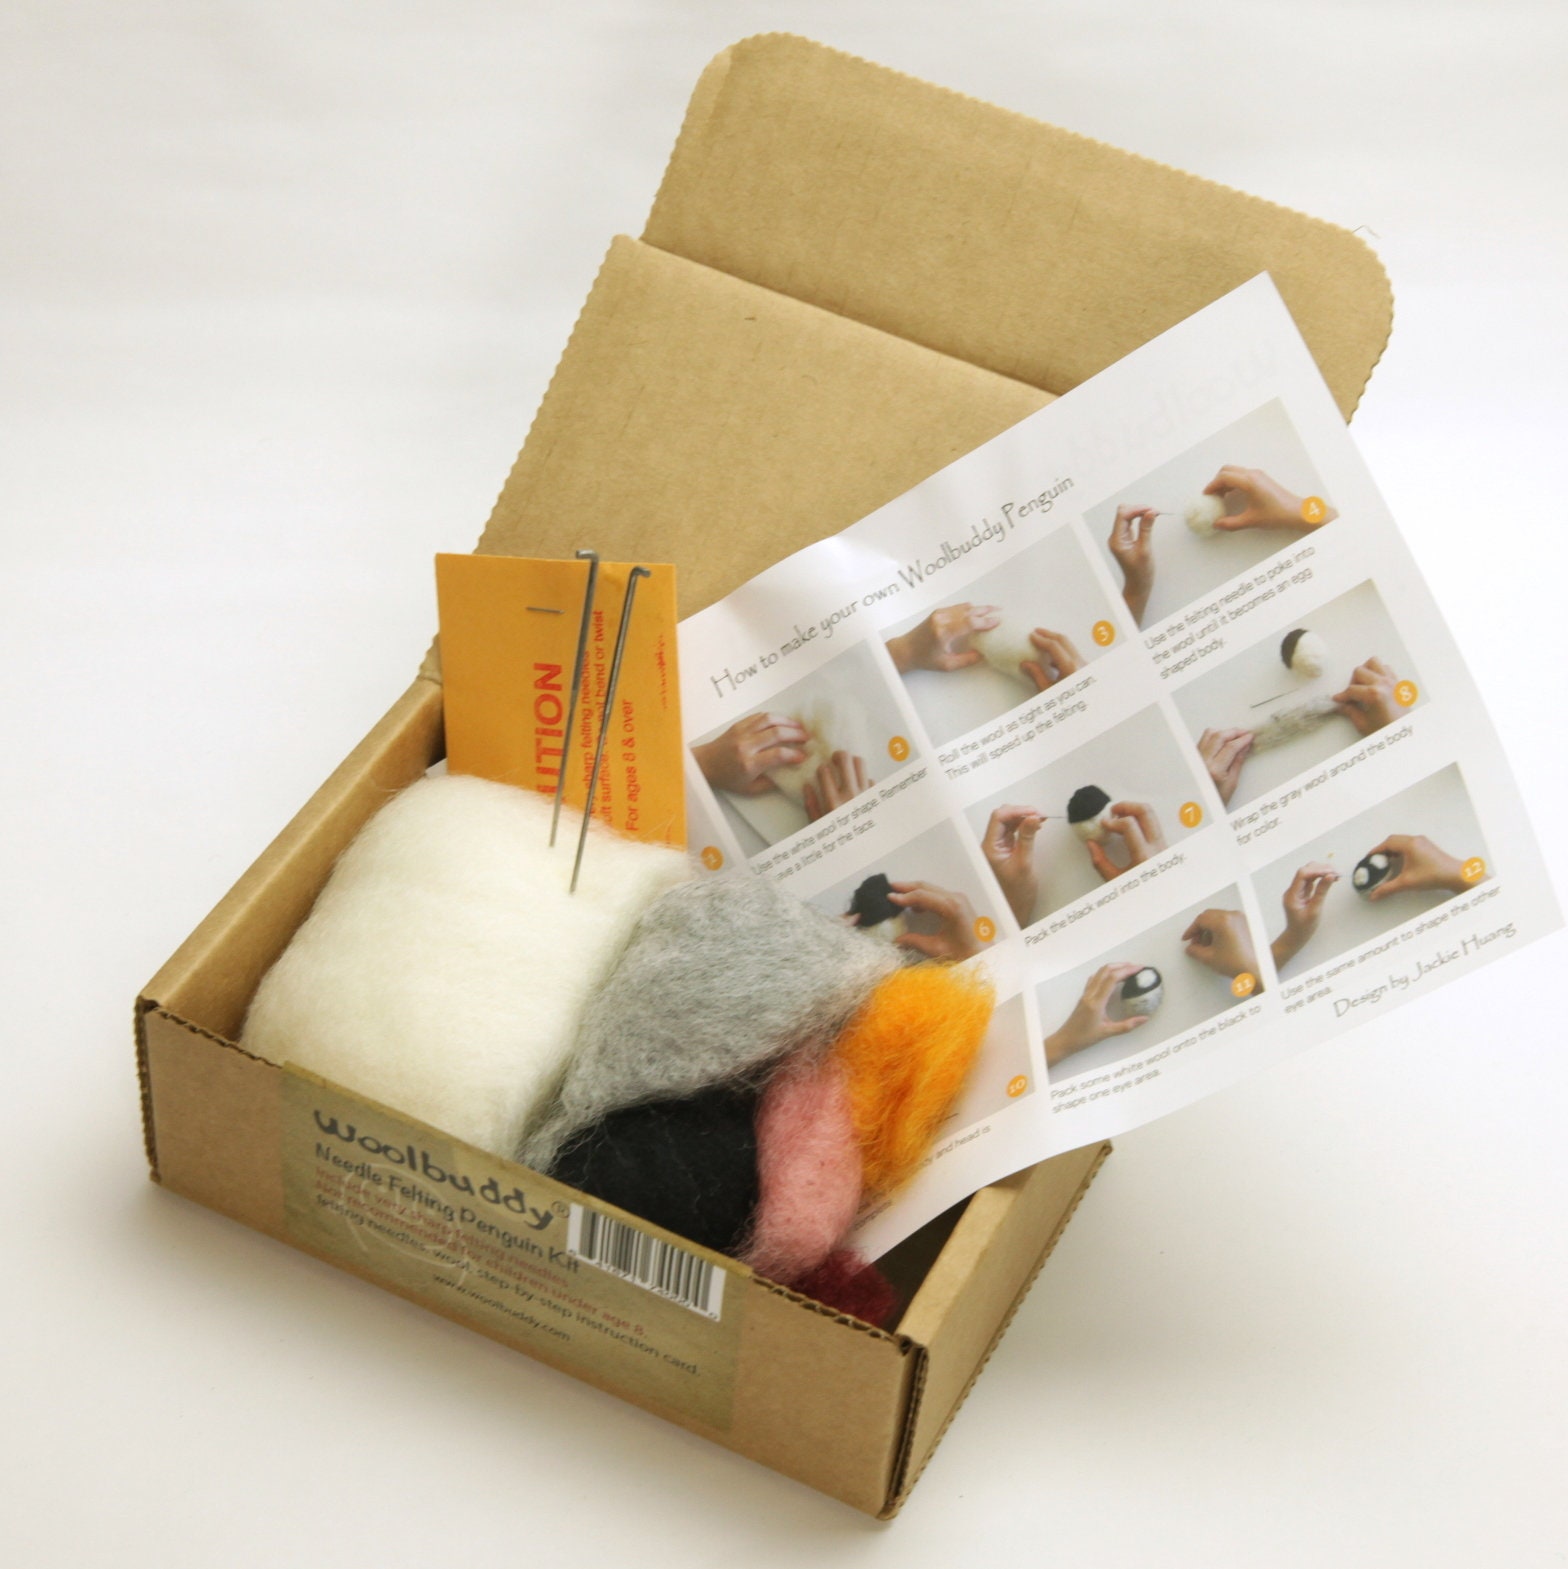 Needle Felting Kit Box, Felting Bundle Box, Needle Felting Starter Kit,  Wool Felting Craft Kit, Beginners Felting Gift Set Box, Hobby Gift 